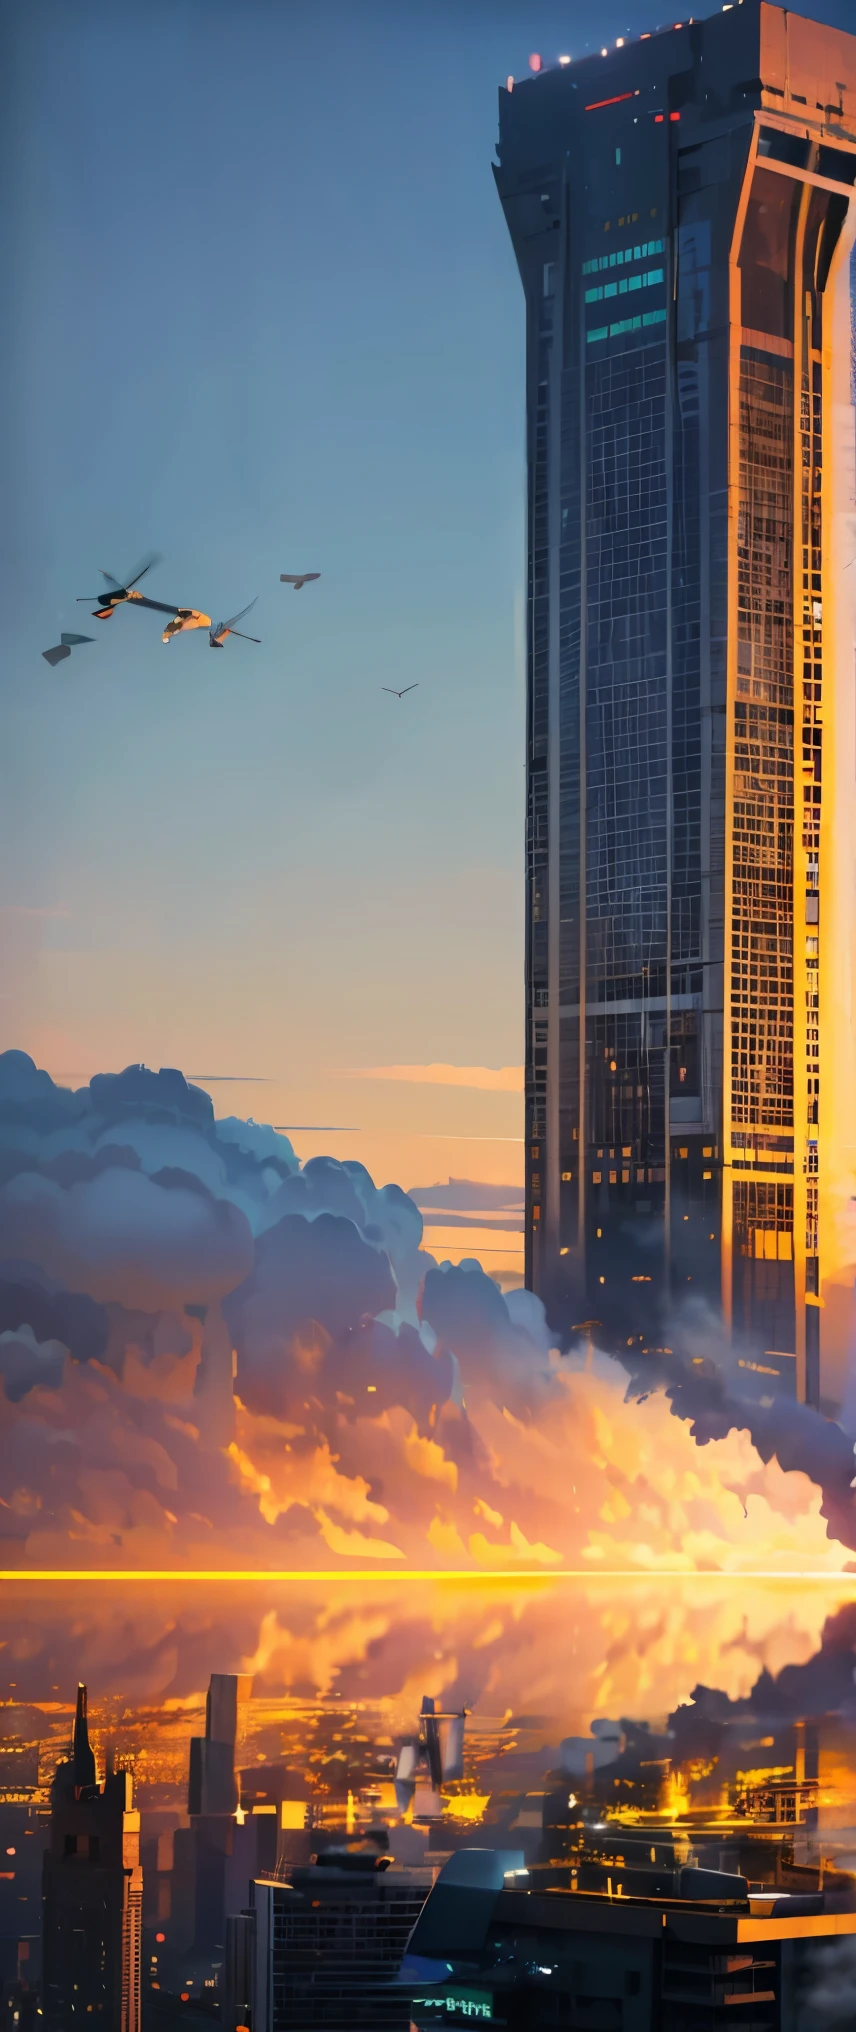 ((Höchste Bildqualität, Meisterwerk, Höchste Bildqualität, 8K)), ((Landschaftsfotografie)), Ein Wolkenkratzer in New York, An der Wand eines riesigen Turms wird ein riesiger Kokon hergestellt, ein riesiges Wespennest, Kampfhubschrauber umzingeln es, 